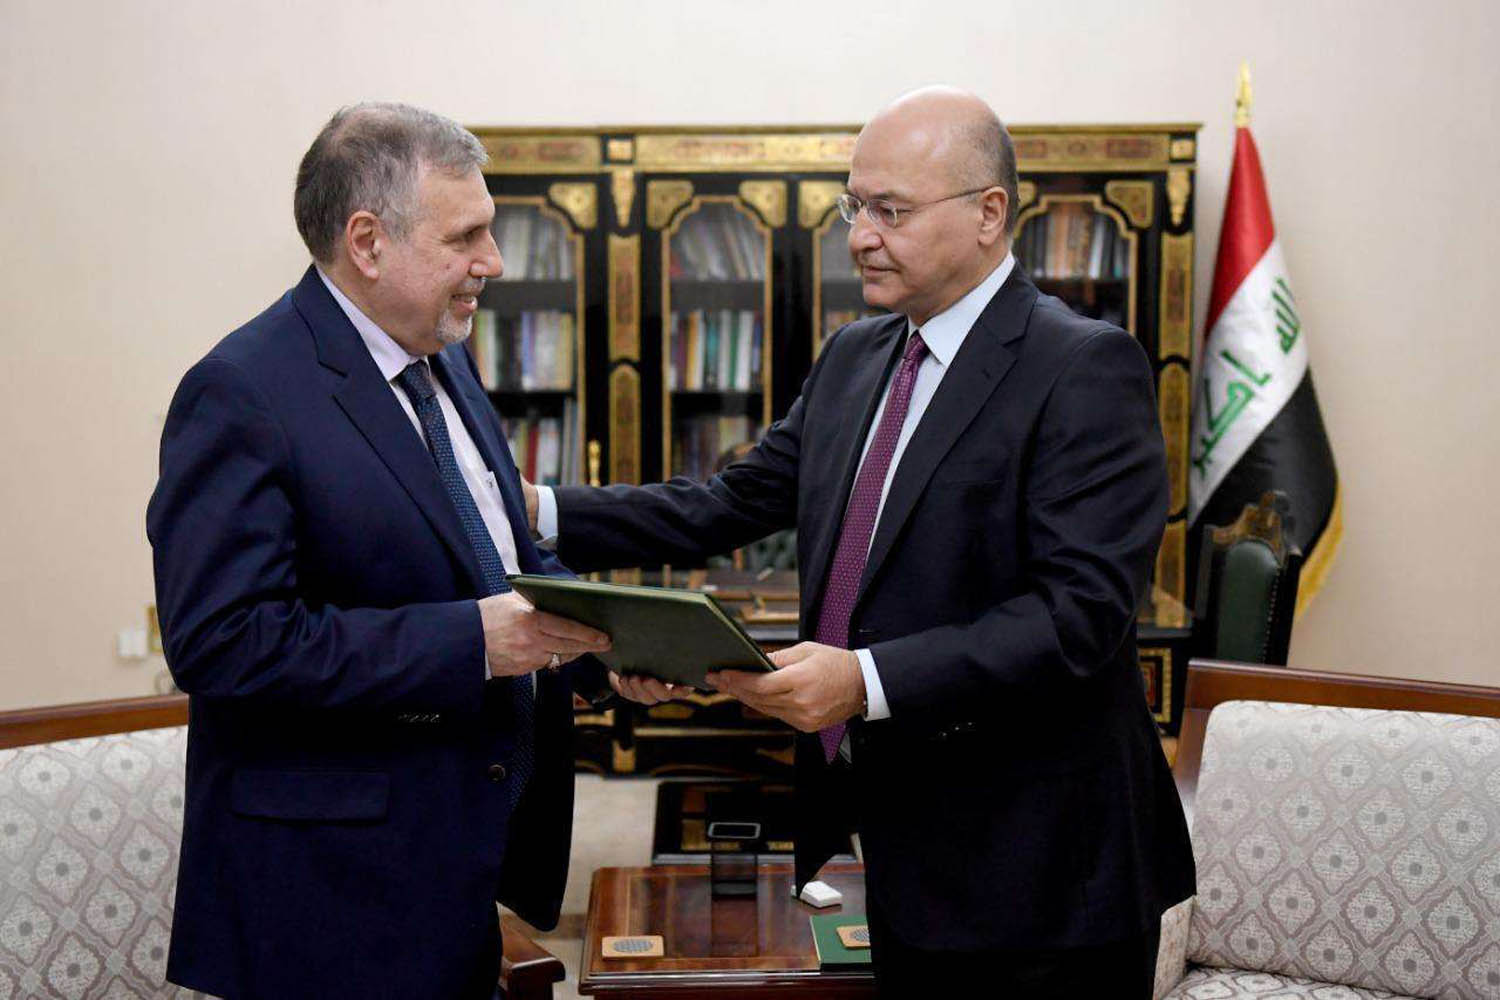 الرئيس العراقي برهم صالح مع محمد توفيق علاوي اثناء تكليفه بالحكومة